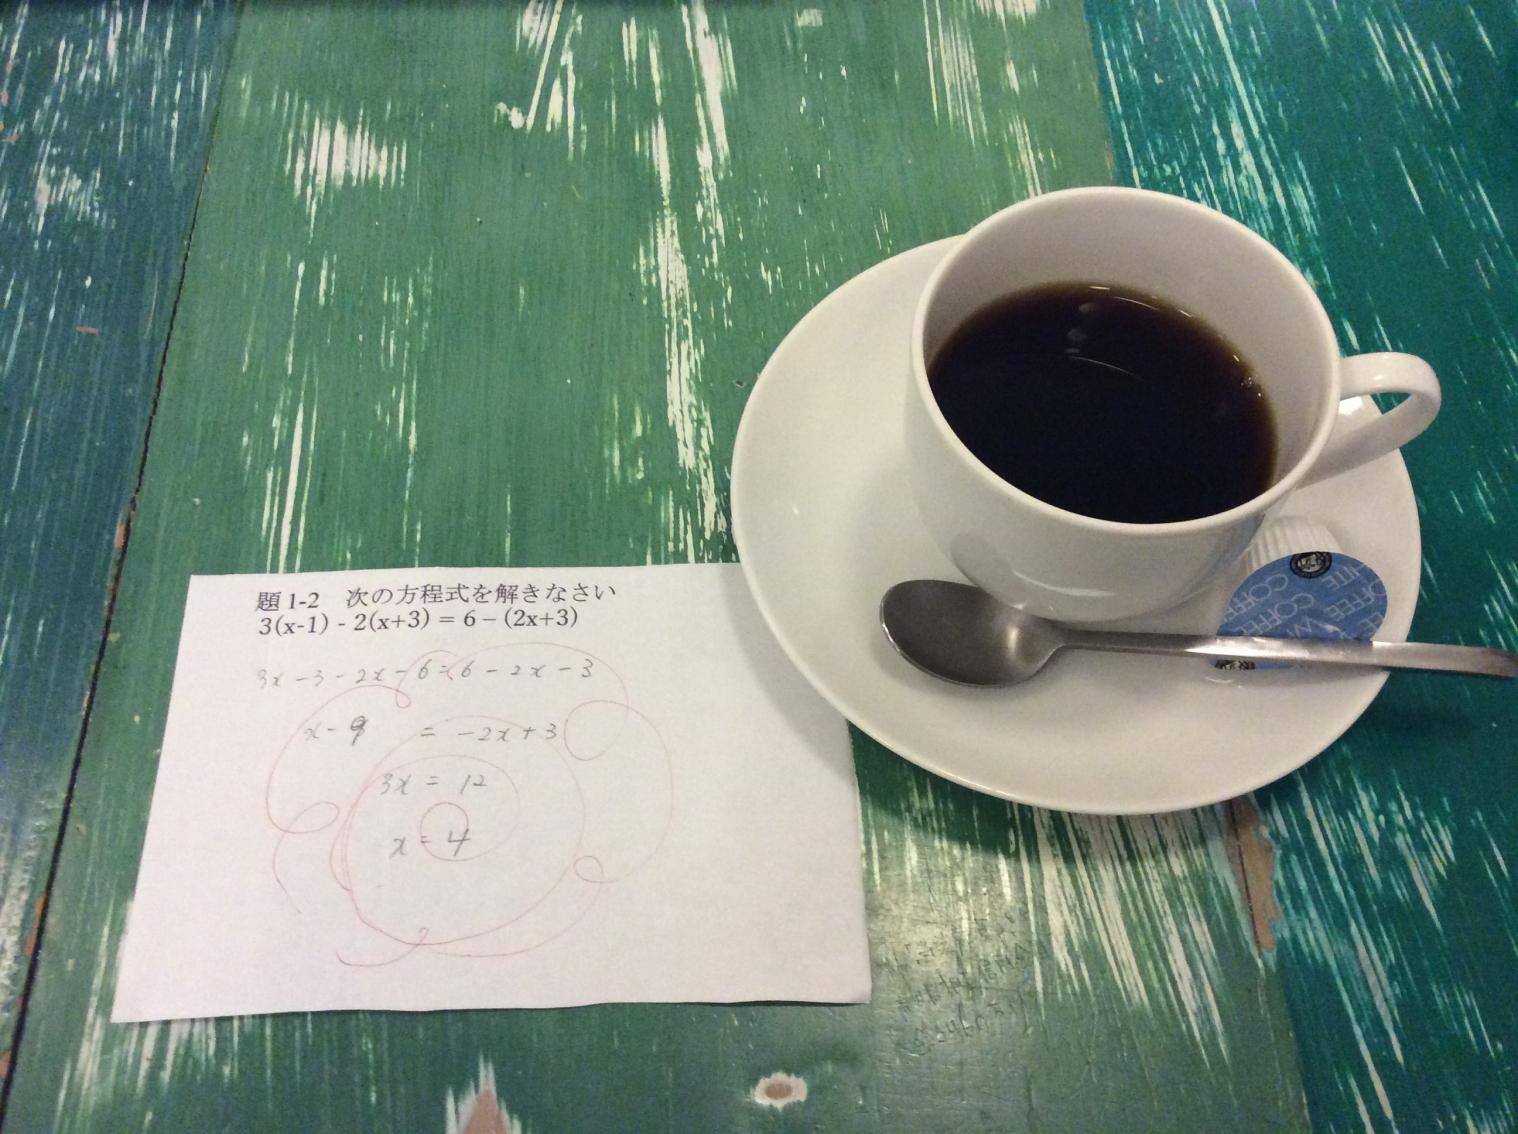 SANDECO COFFEE Sugaku Cafe-1